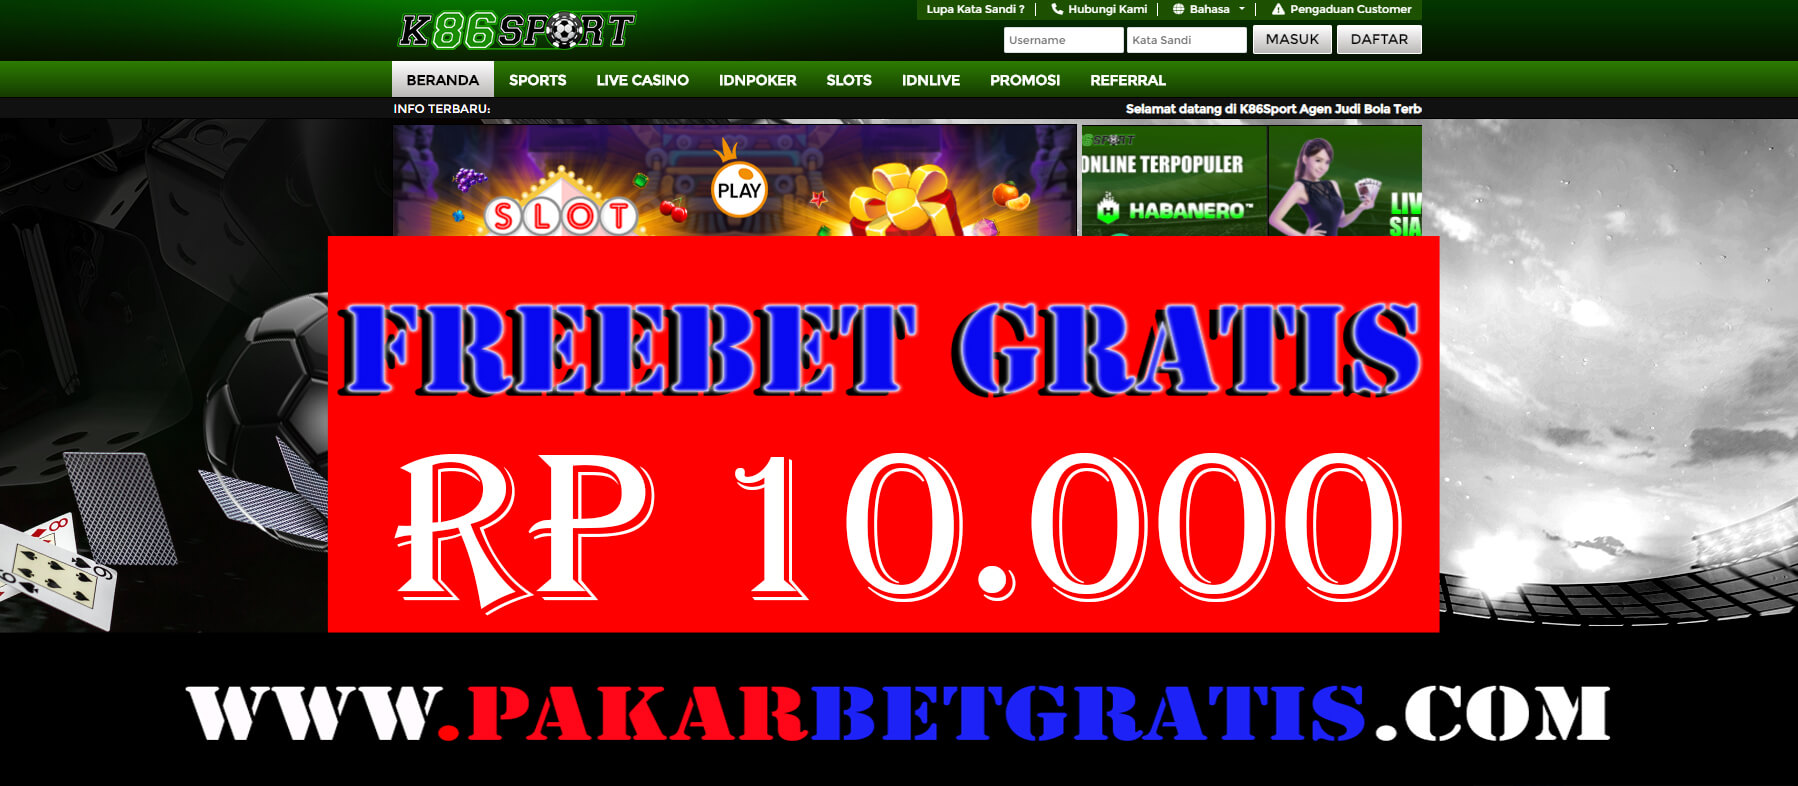 Freebet Gratis k86sport Rp 10.000 Tanpa Deposit